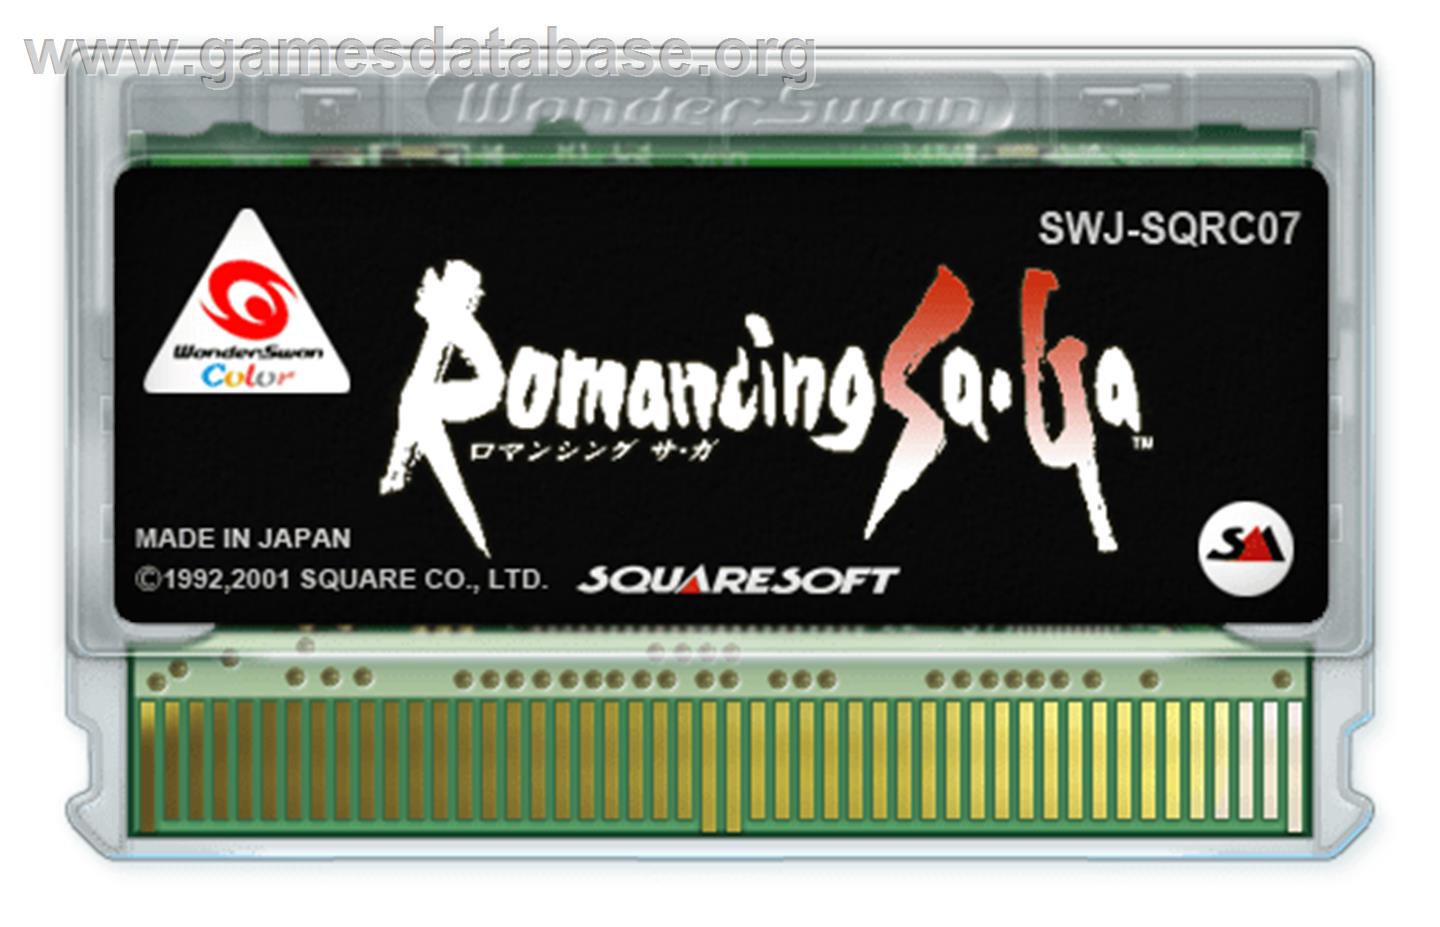 Romancing SaGa - Bandai WonderSwan Color - Artwork - Cartridge